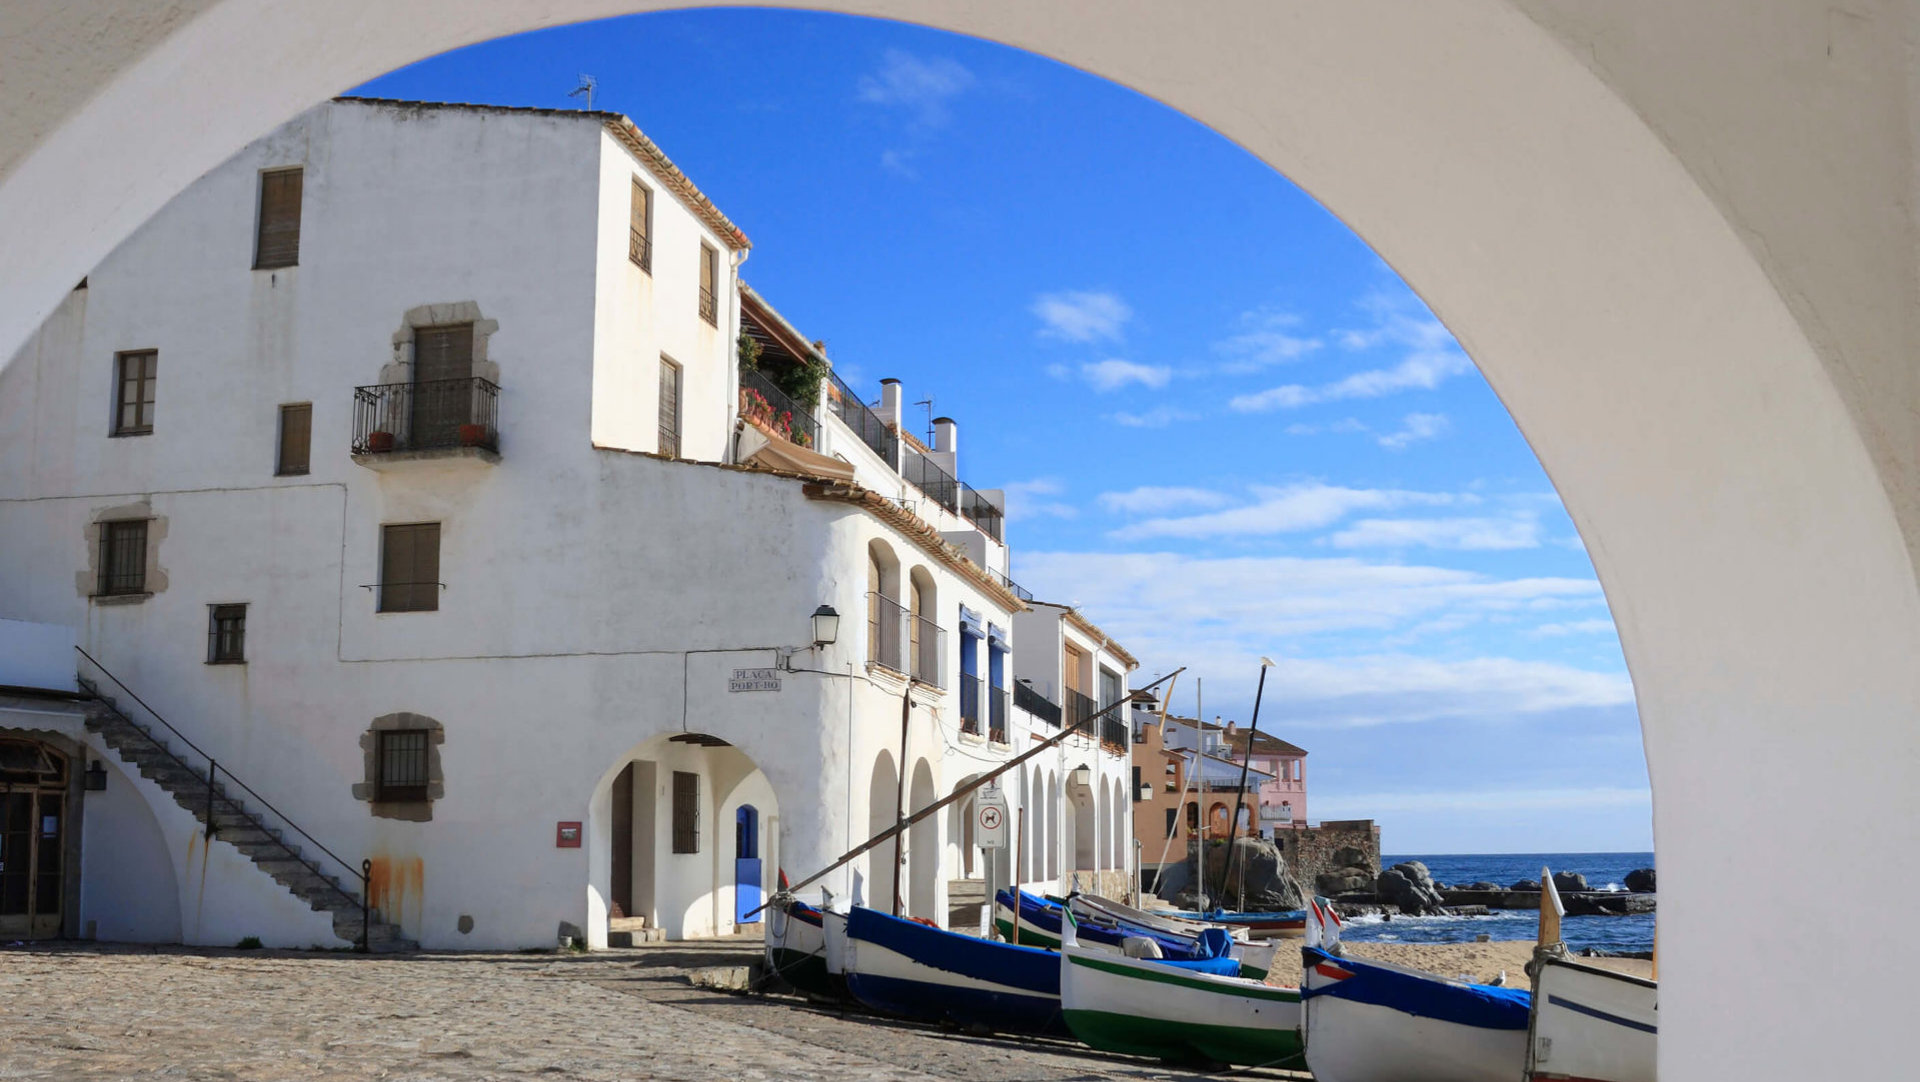 The 10 most beautiful towns de la Costa Brava